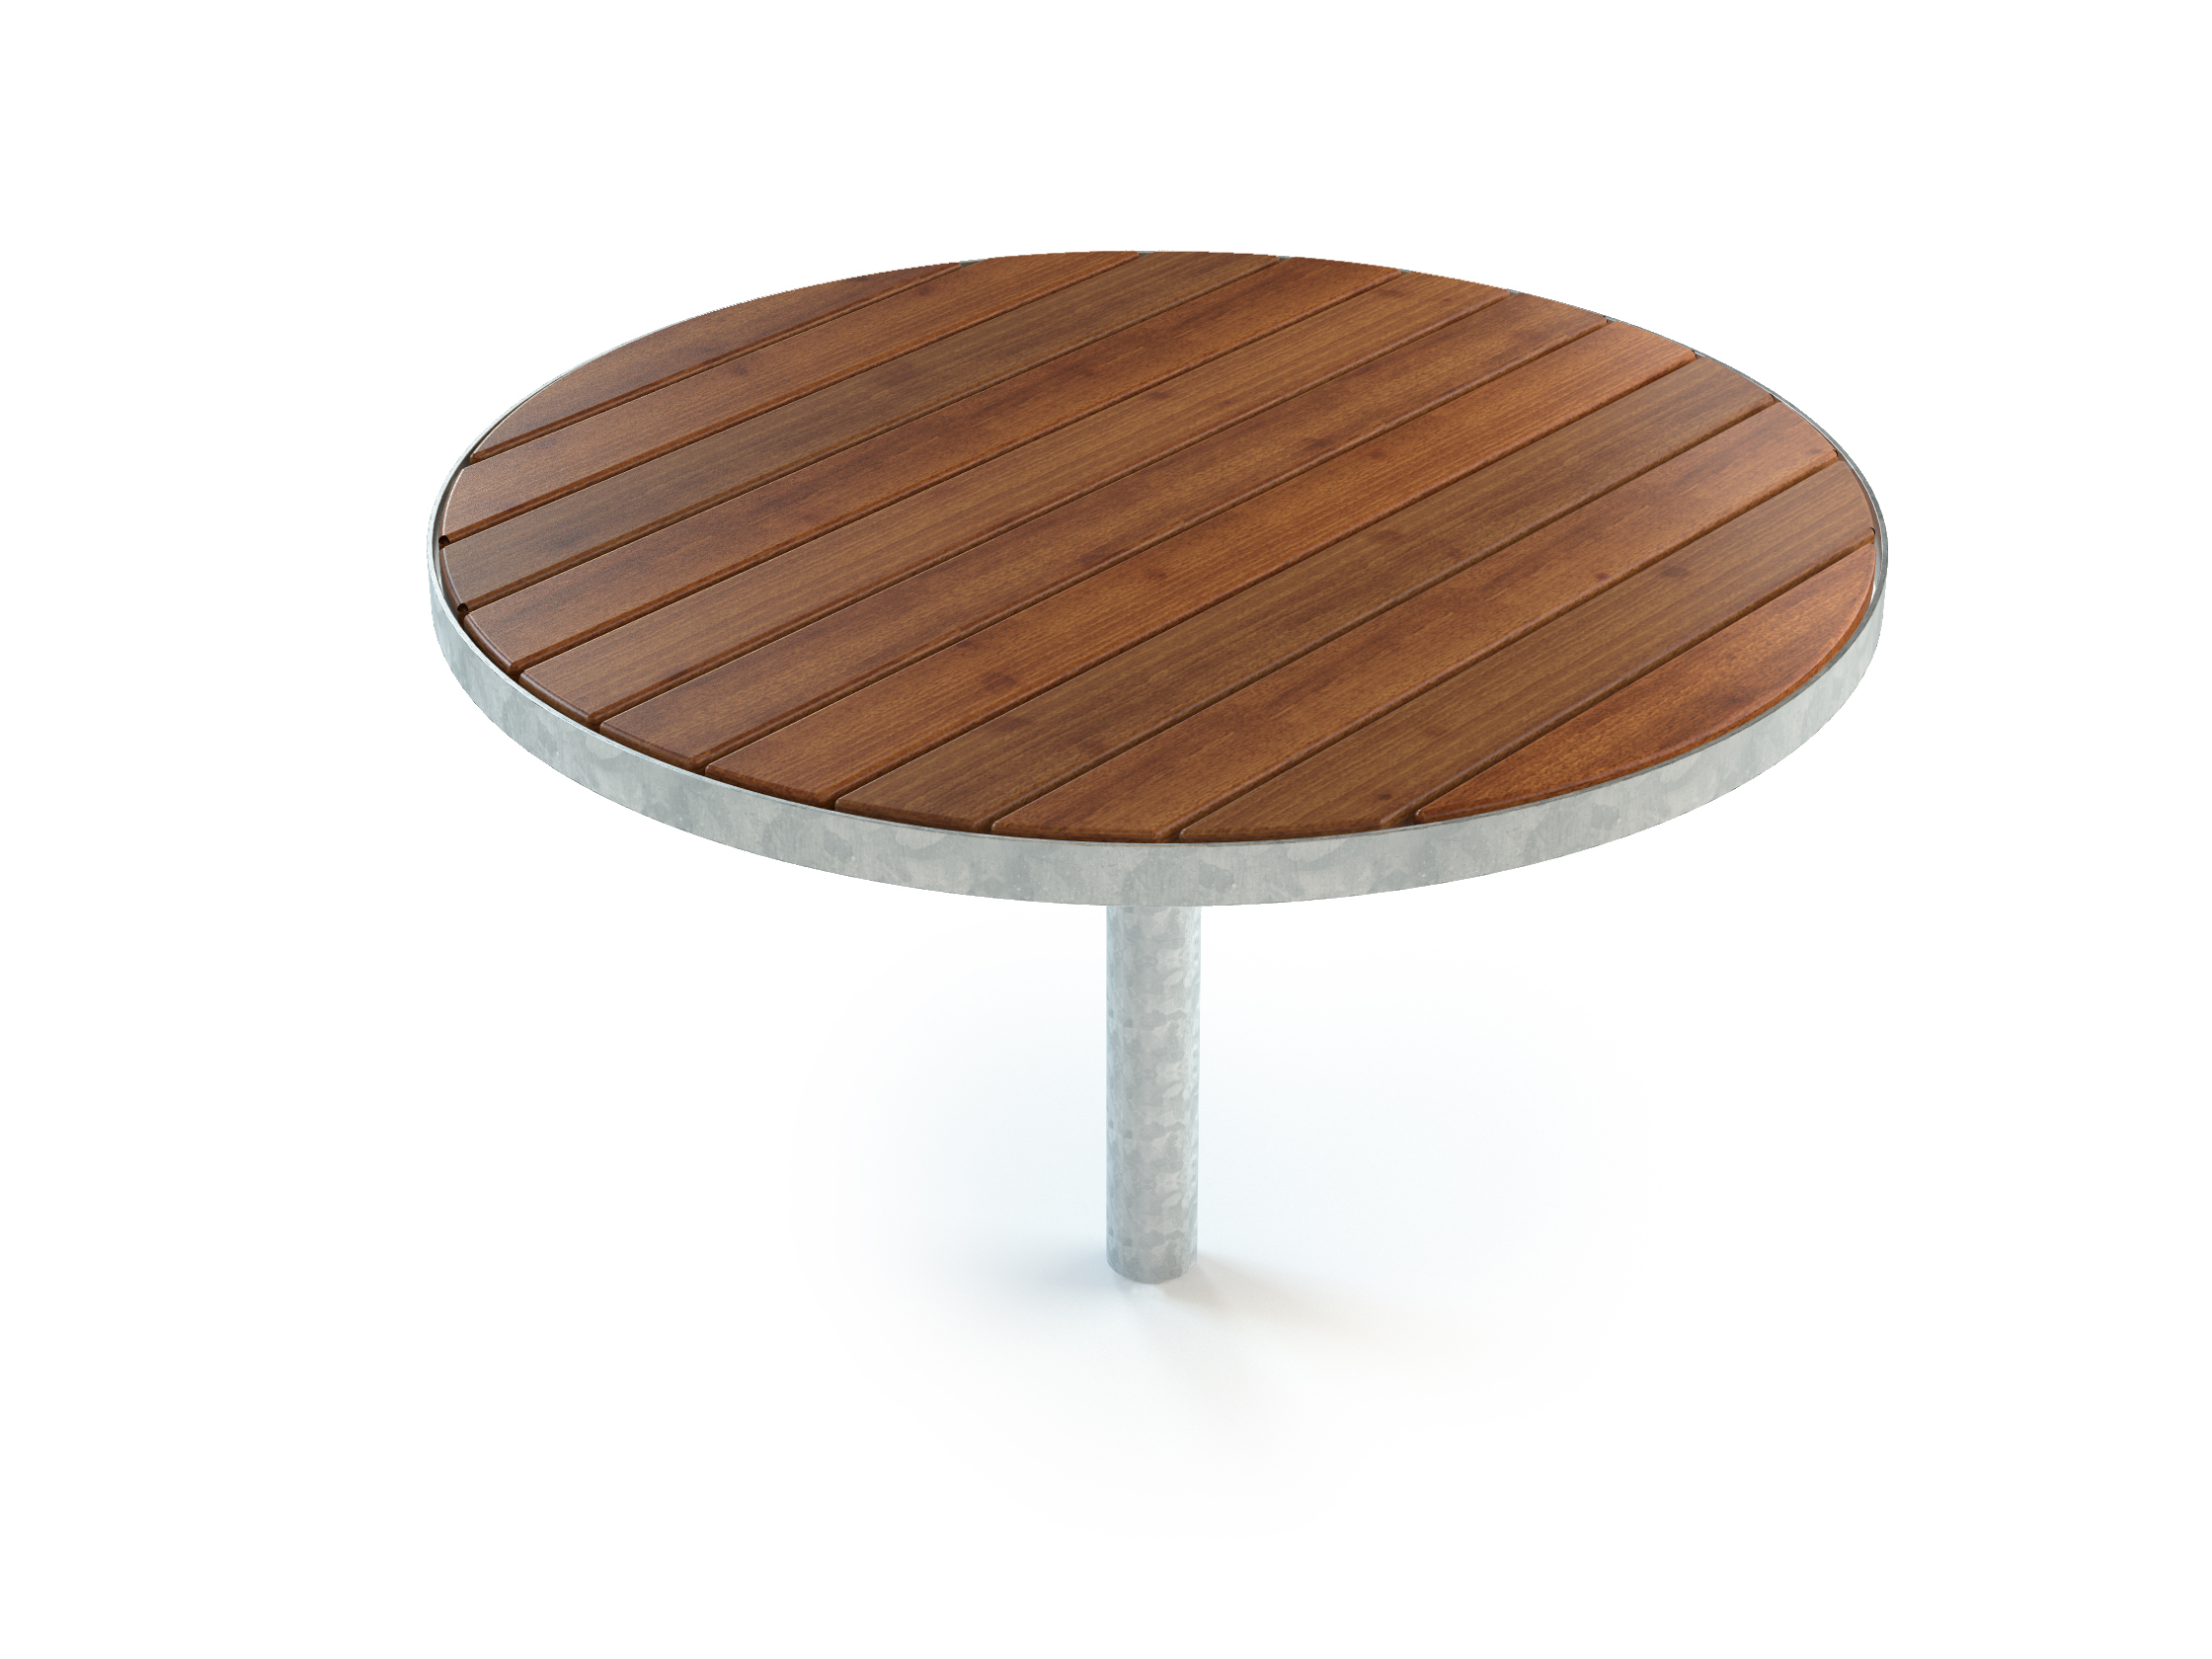 Table publique ronde brun/galvanisé avec scellement béton - SOFIERO réf 8054271 - HAGS_0